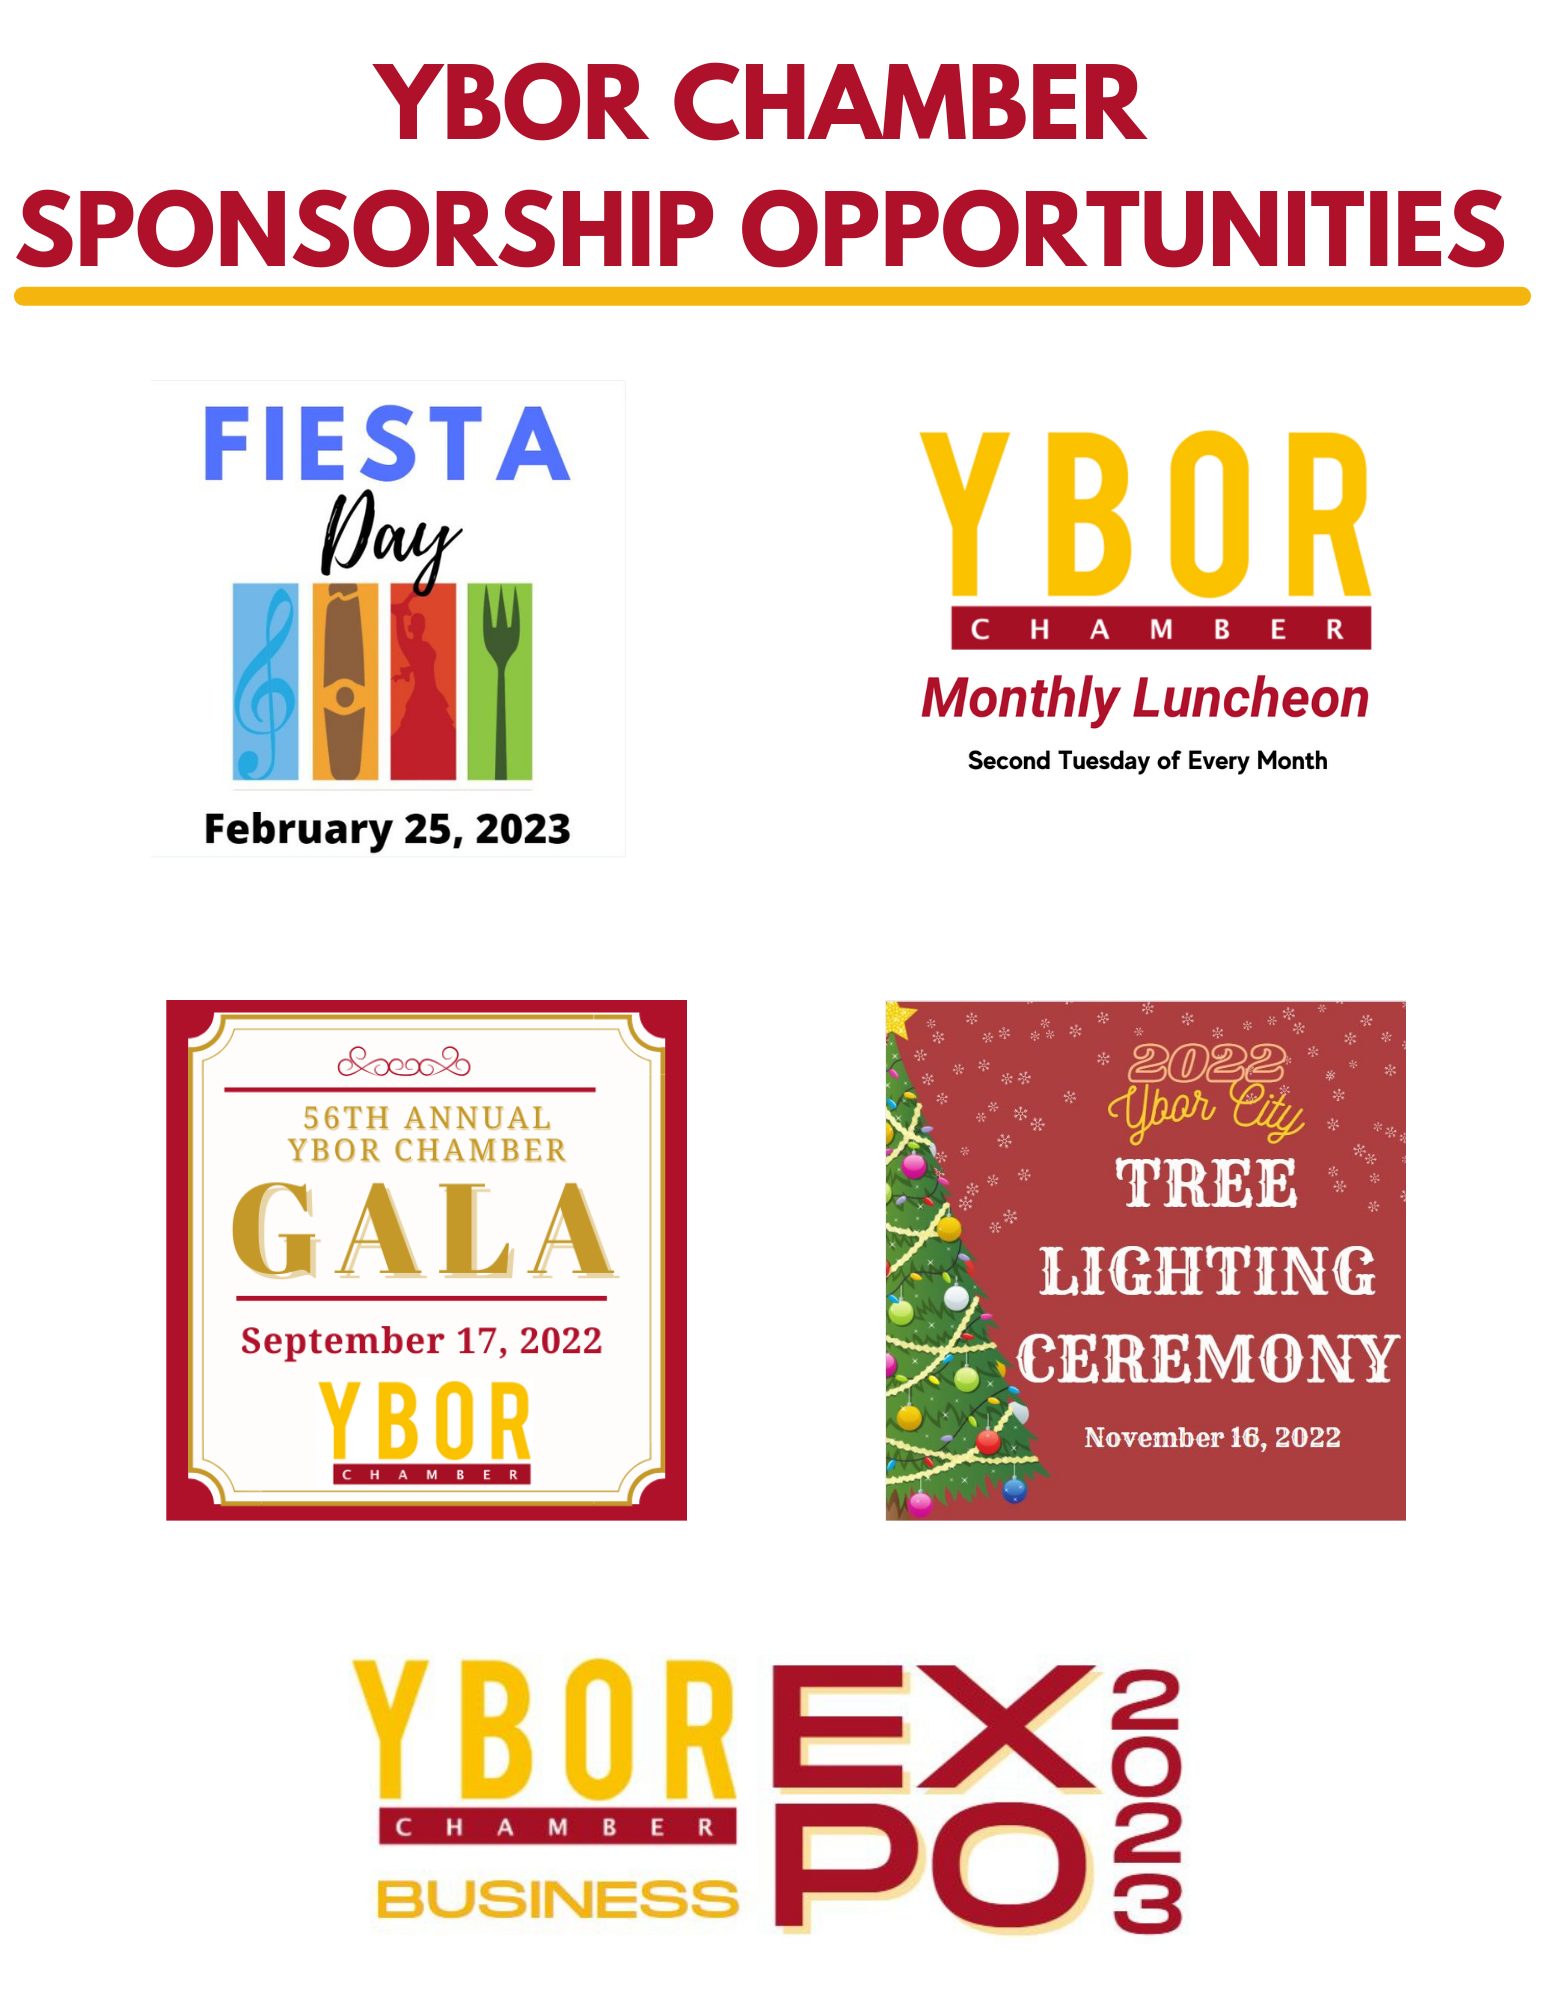 Ybor Chamber Sponsorship Opportunities (1)